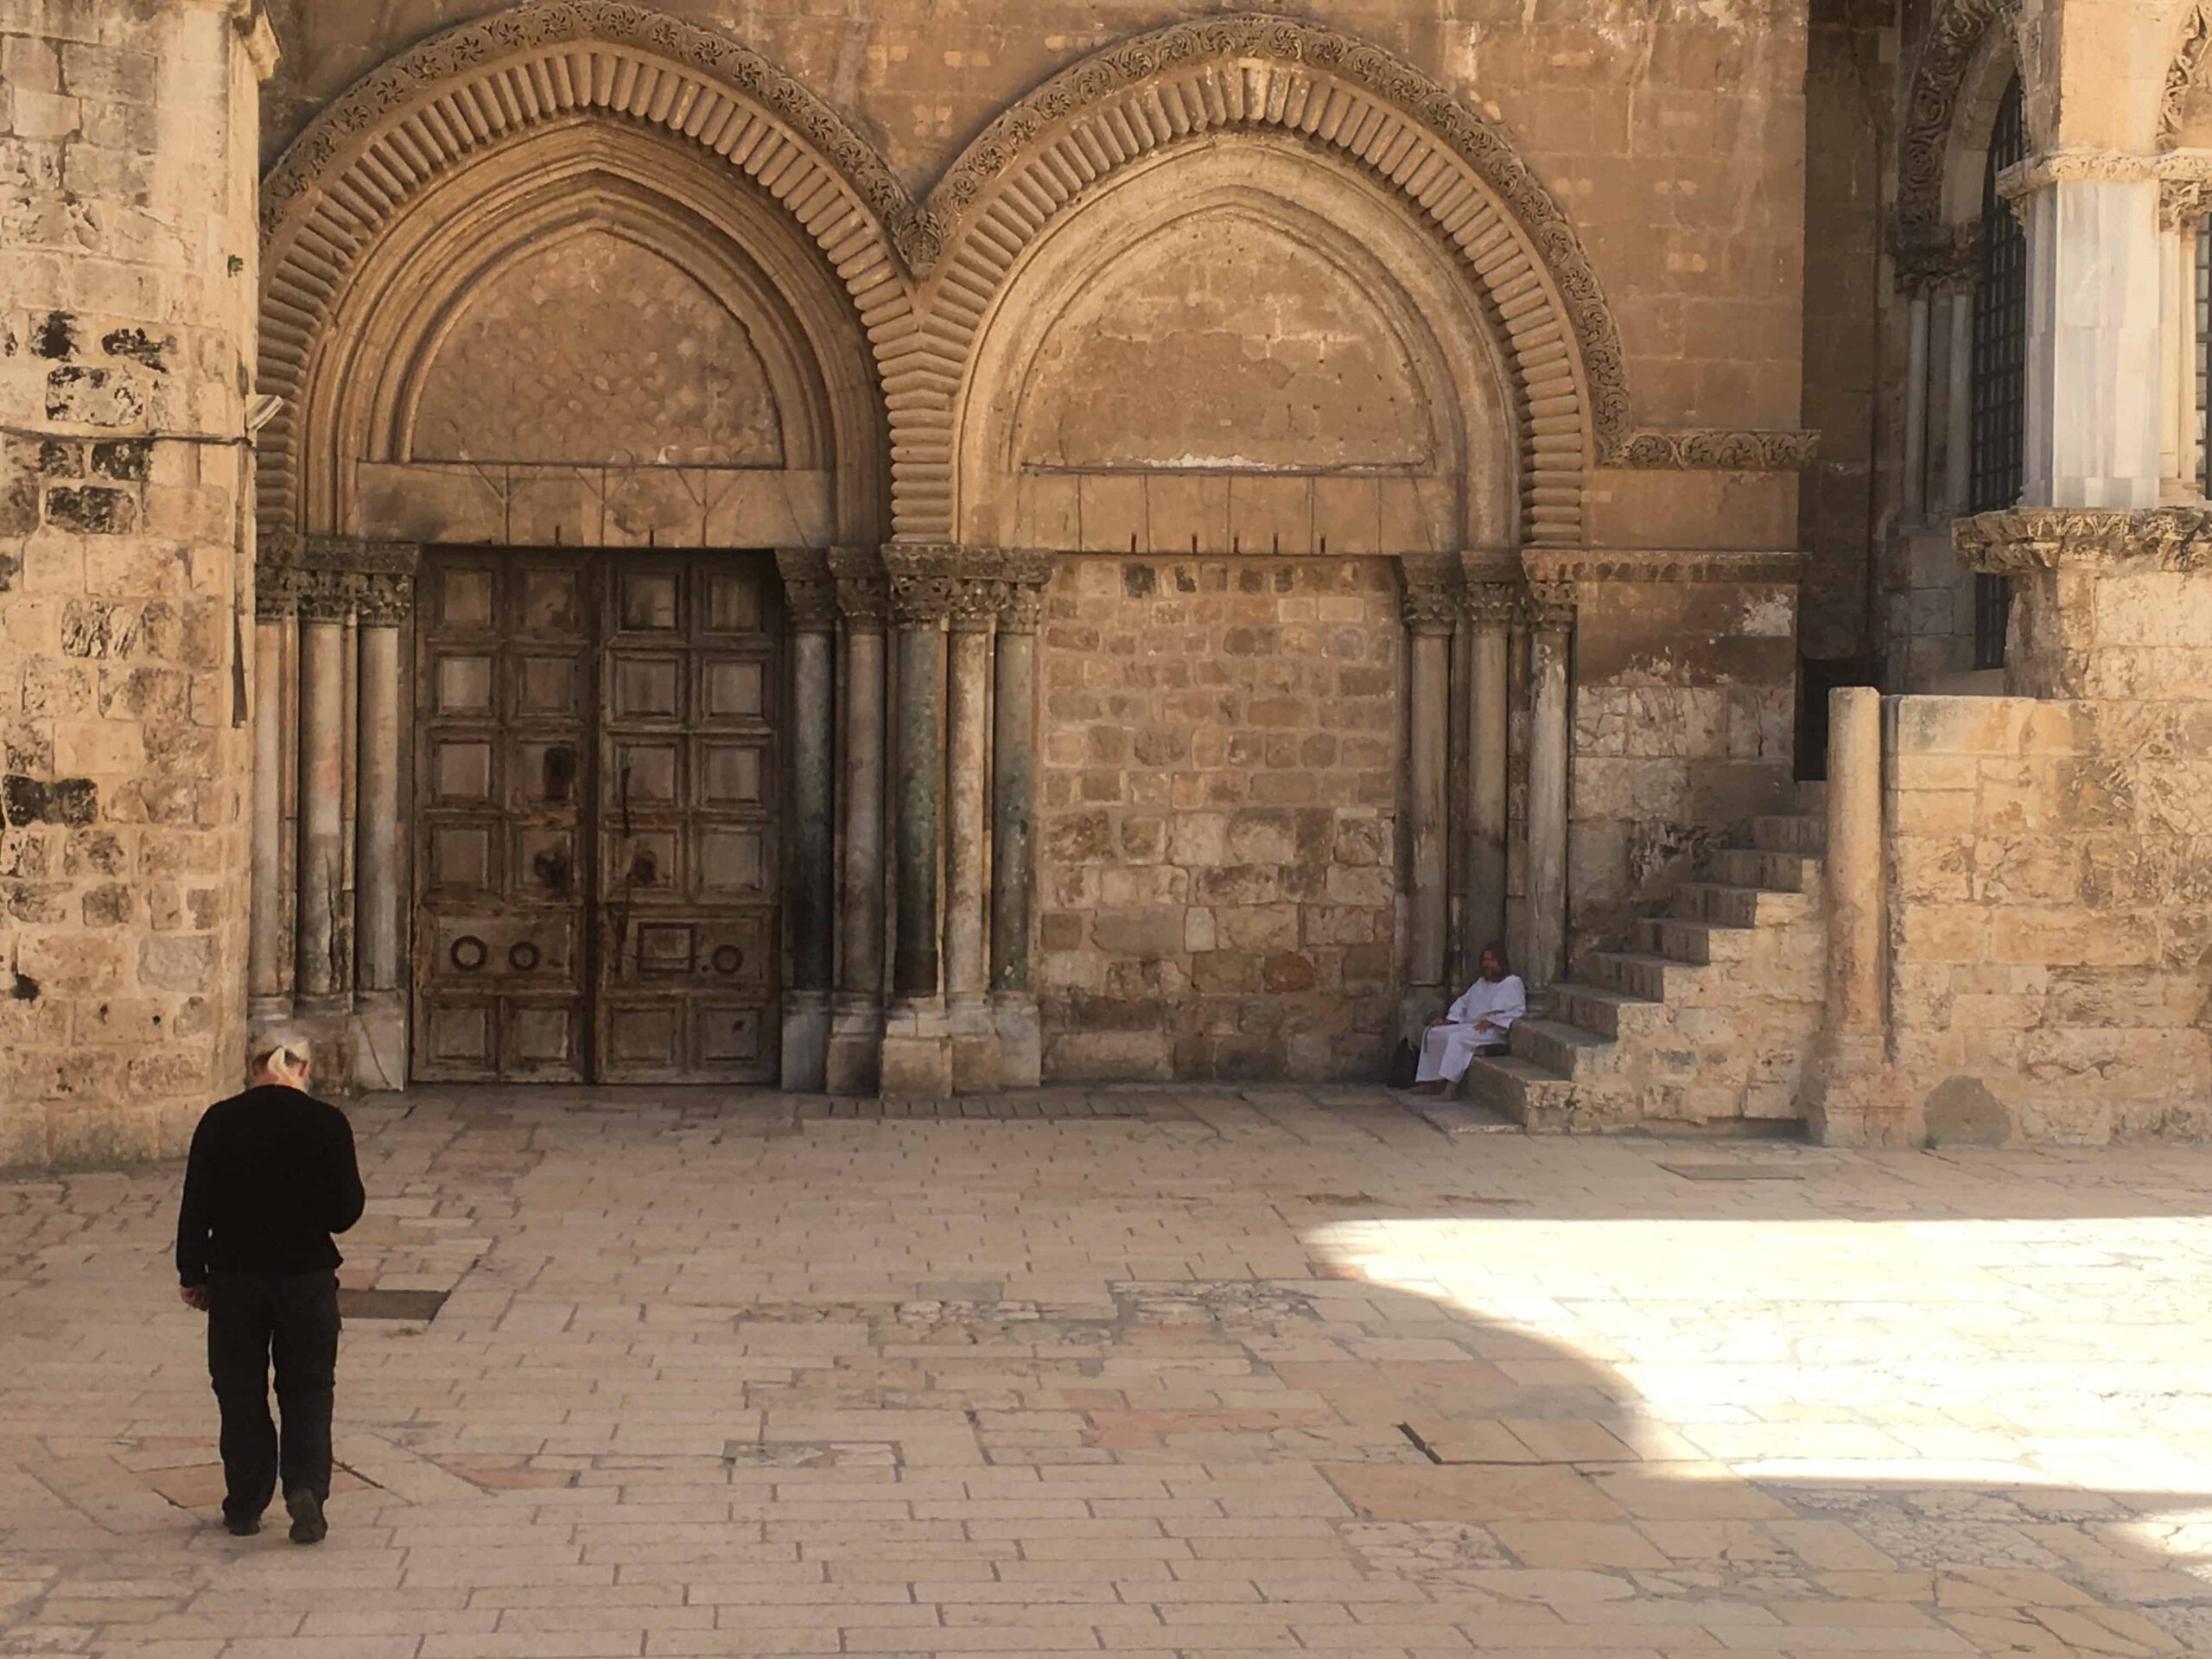 Jerusalem: Holy Week behind closed doors